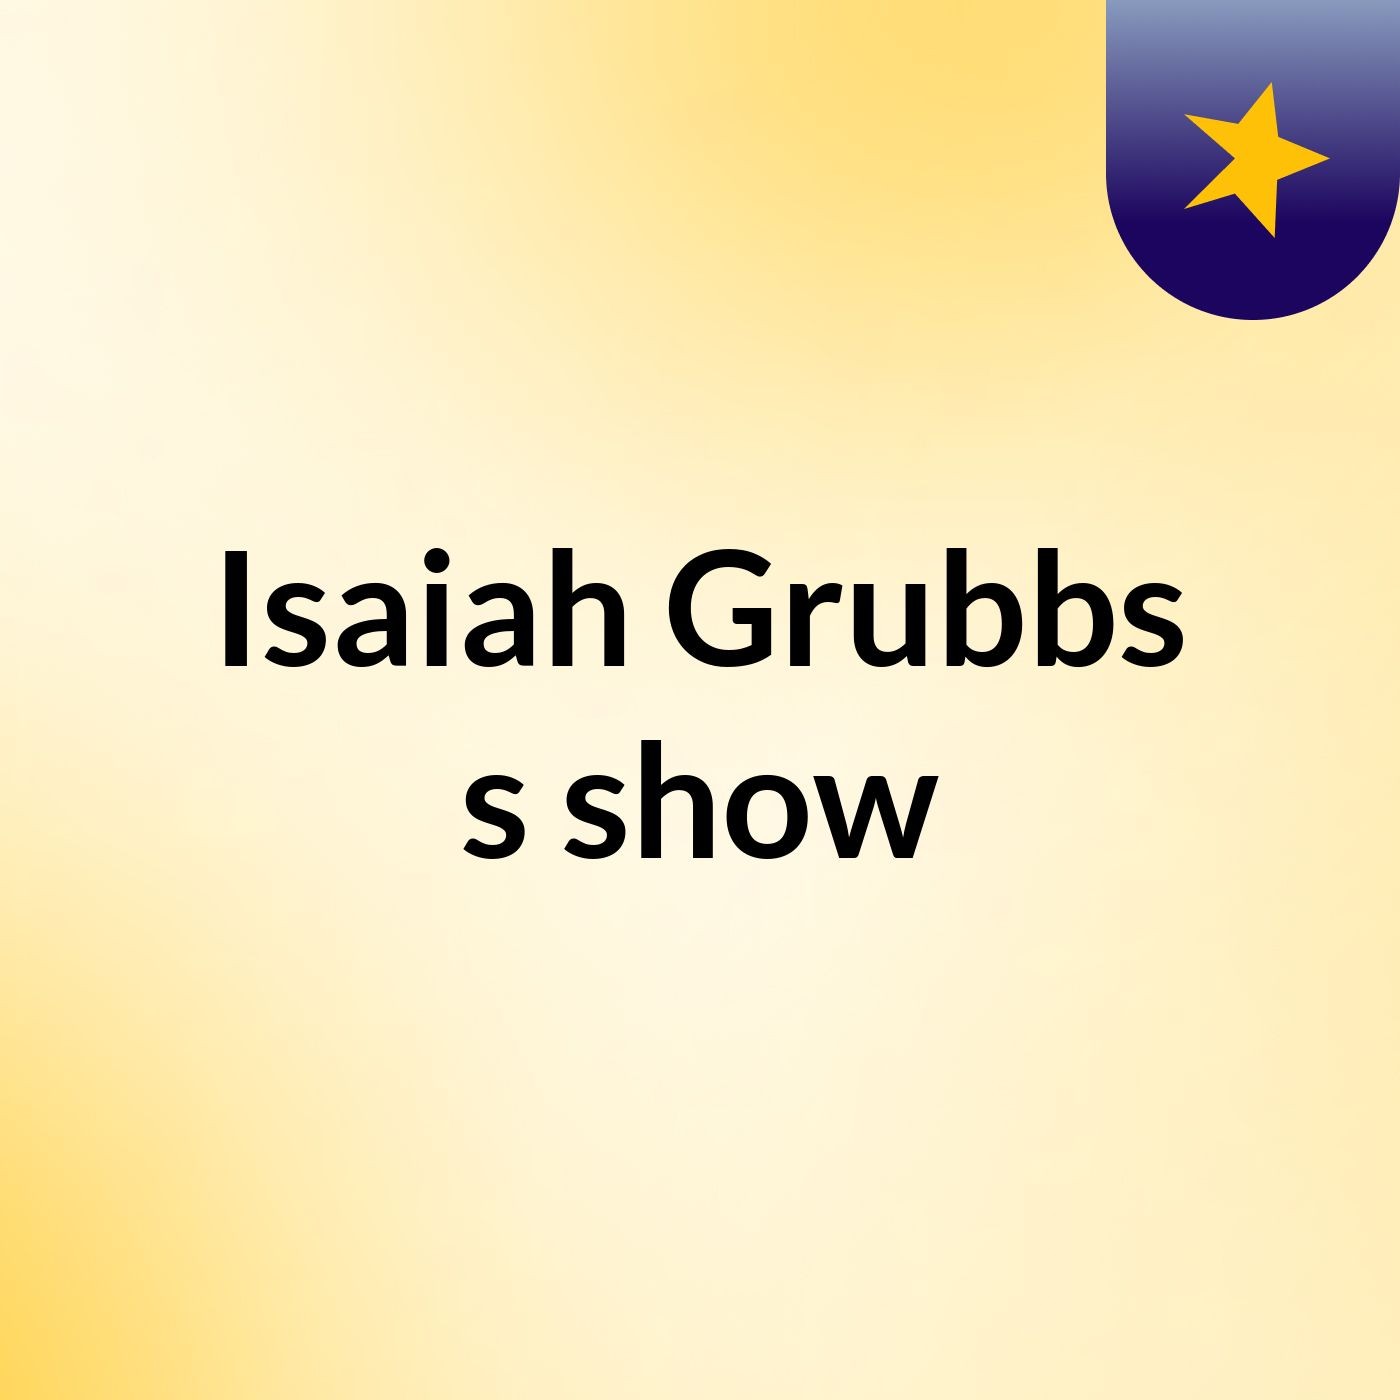 Isaiah Grubbs's show